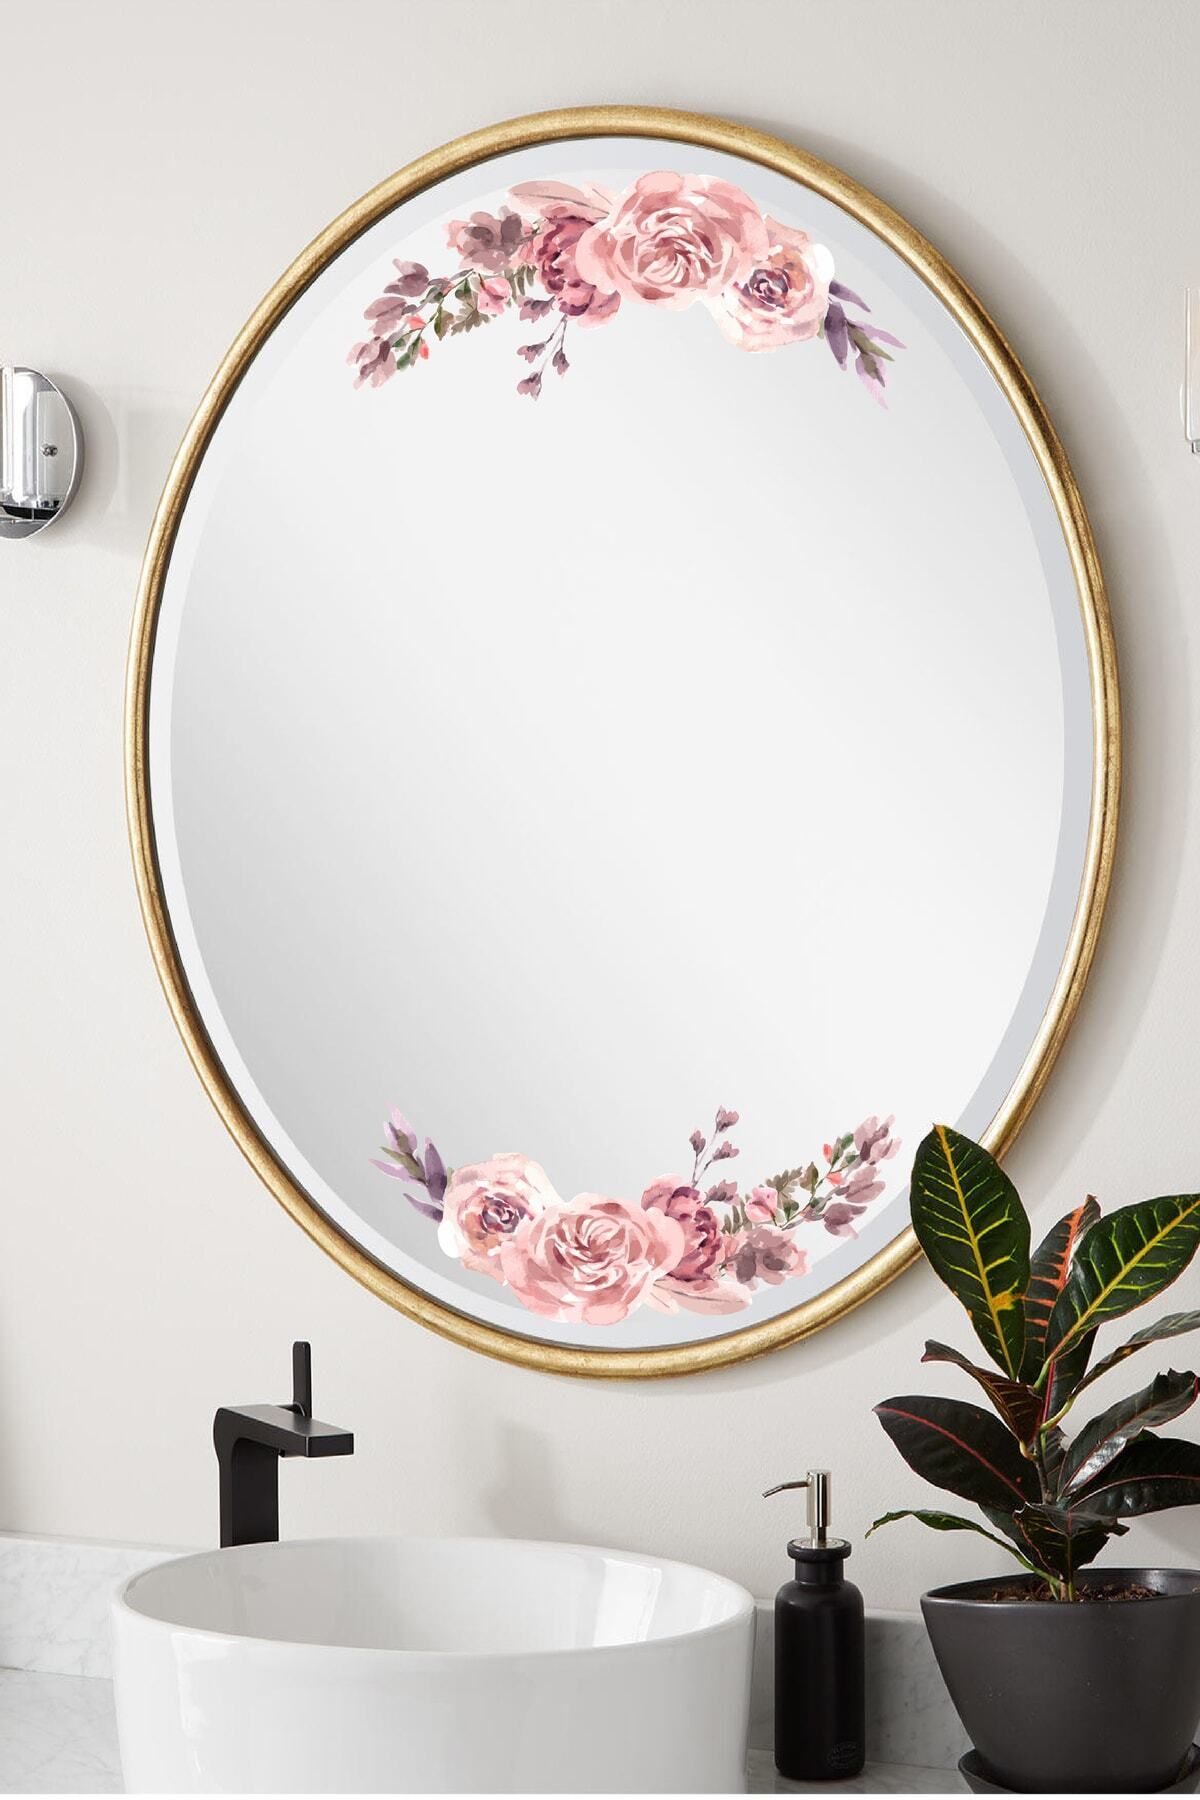 212shop Pembe Gül Çiçek Dekoratif Ayna Cam Mobilya Duvar Kaplama Süsleme Dekor Sticker